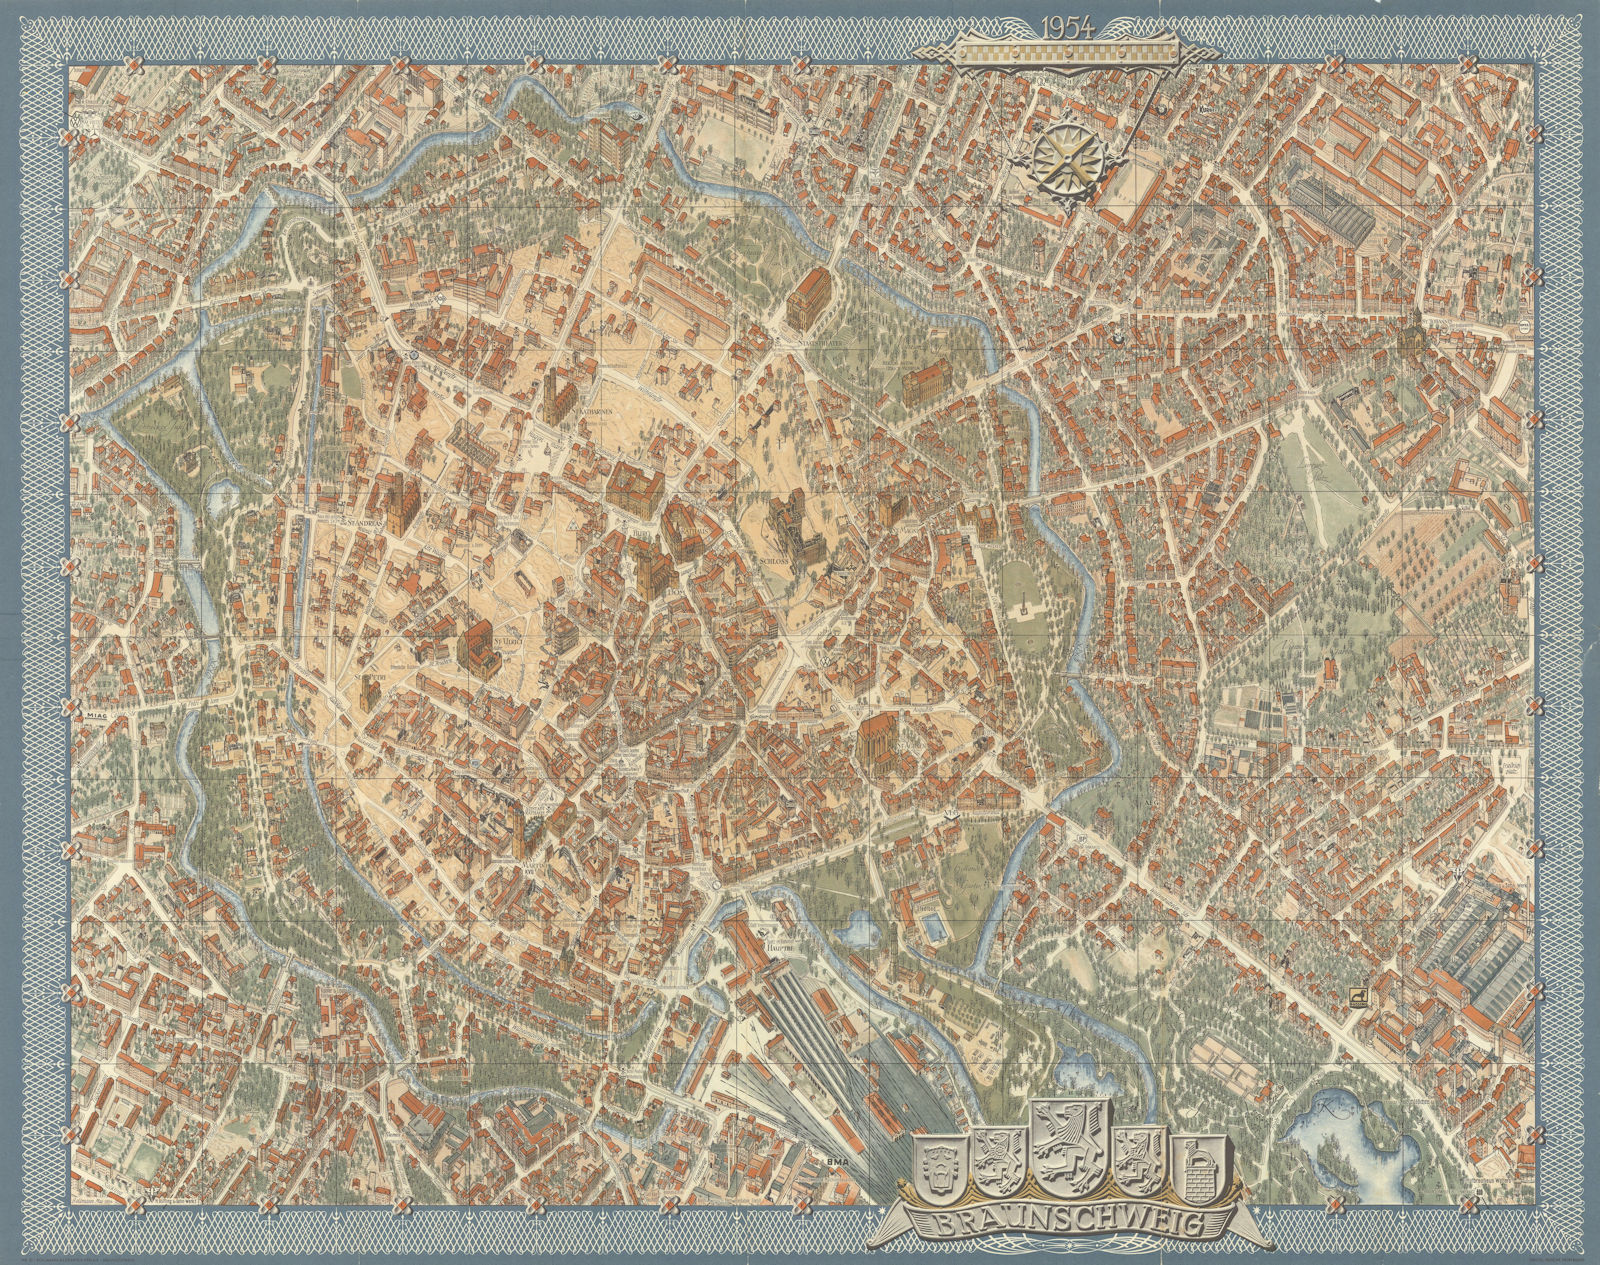 Associate Product Braunschweig Brunswick pictorial bird's eye view city plan #10 BOLLMANN 1954 map